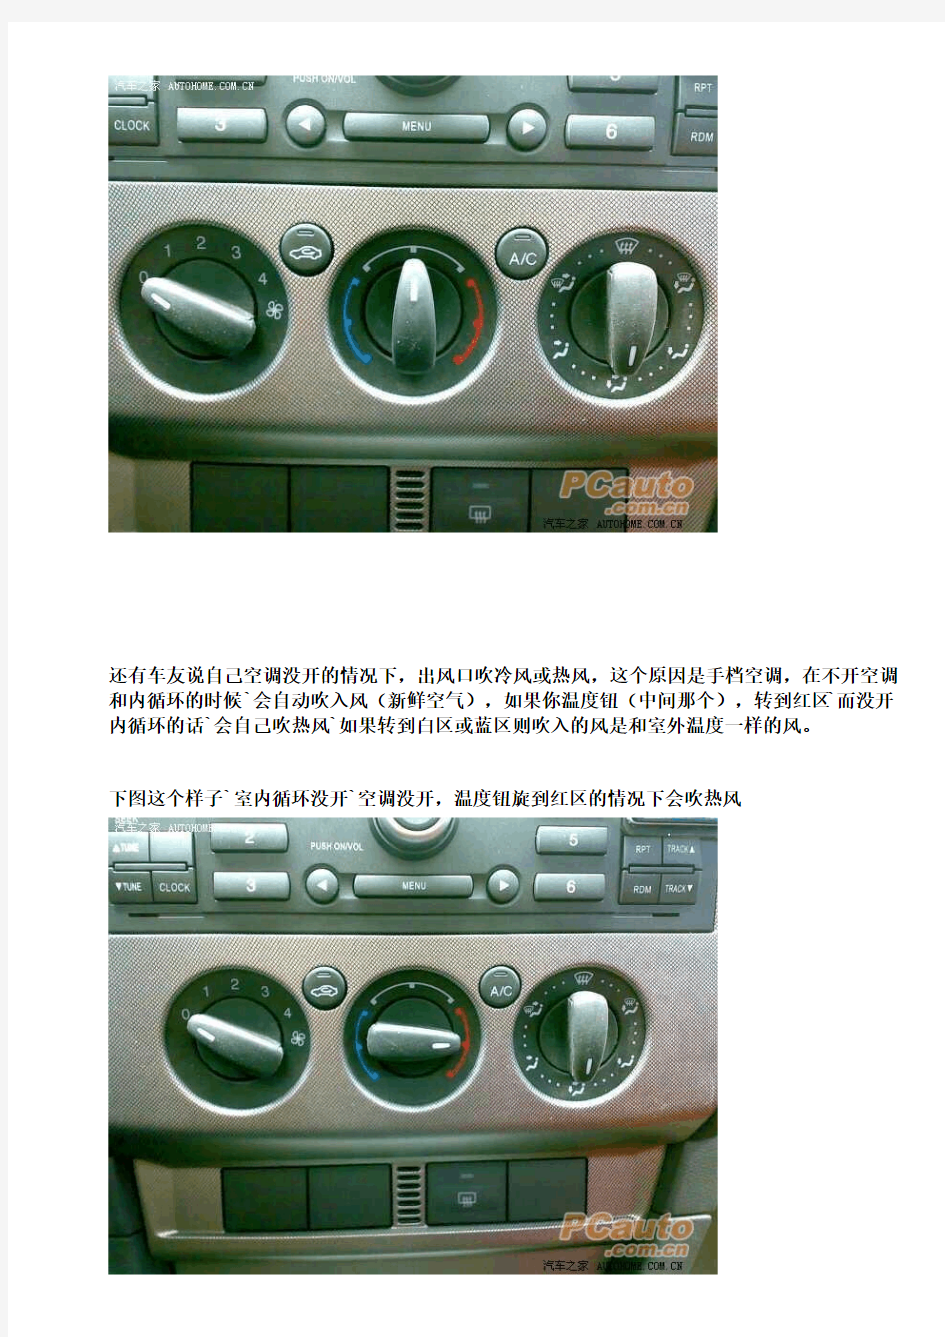 【转】汽车手动式空调的使用方法(福克斯为例)